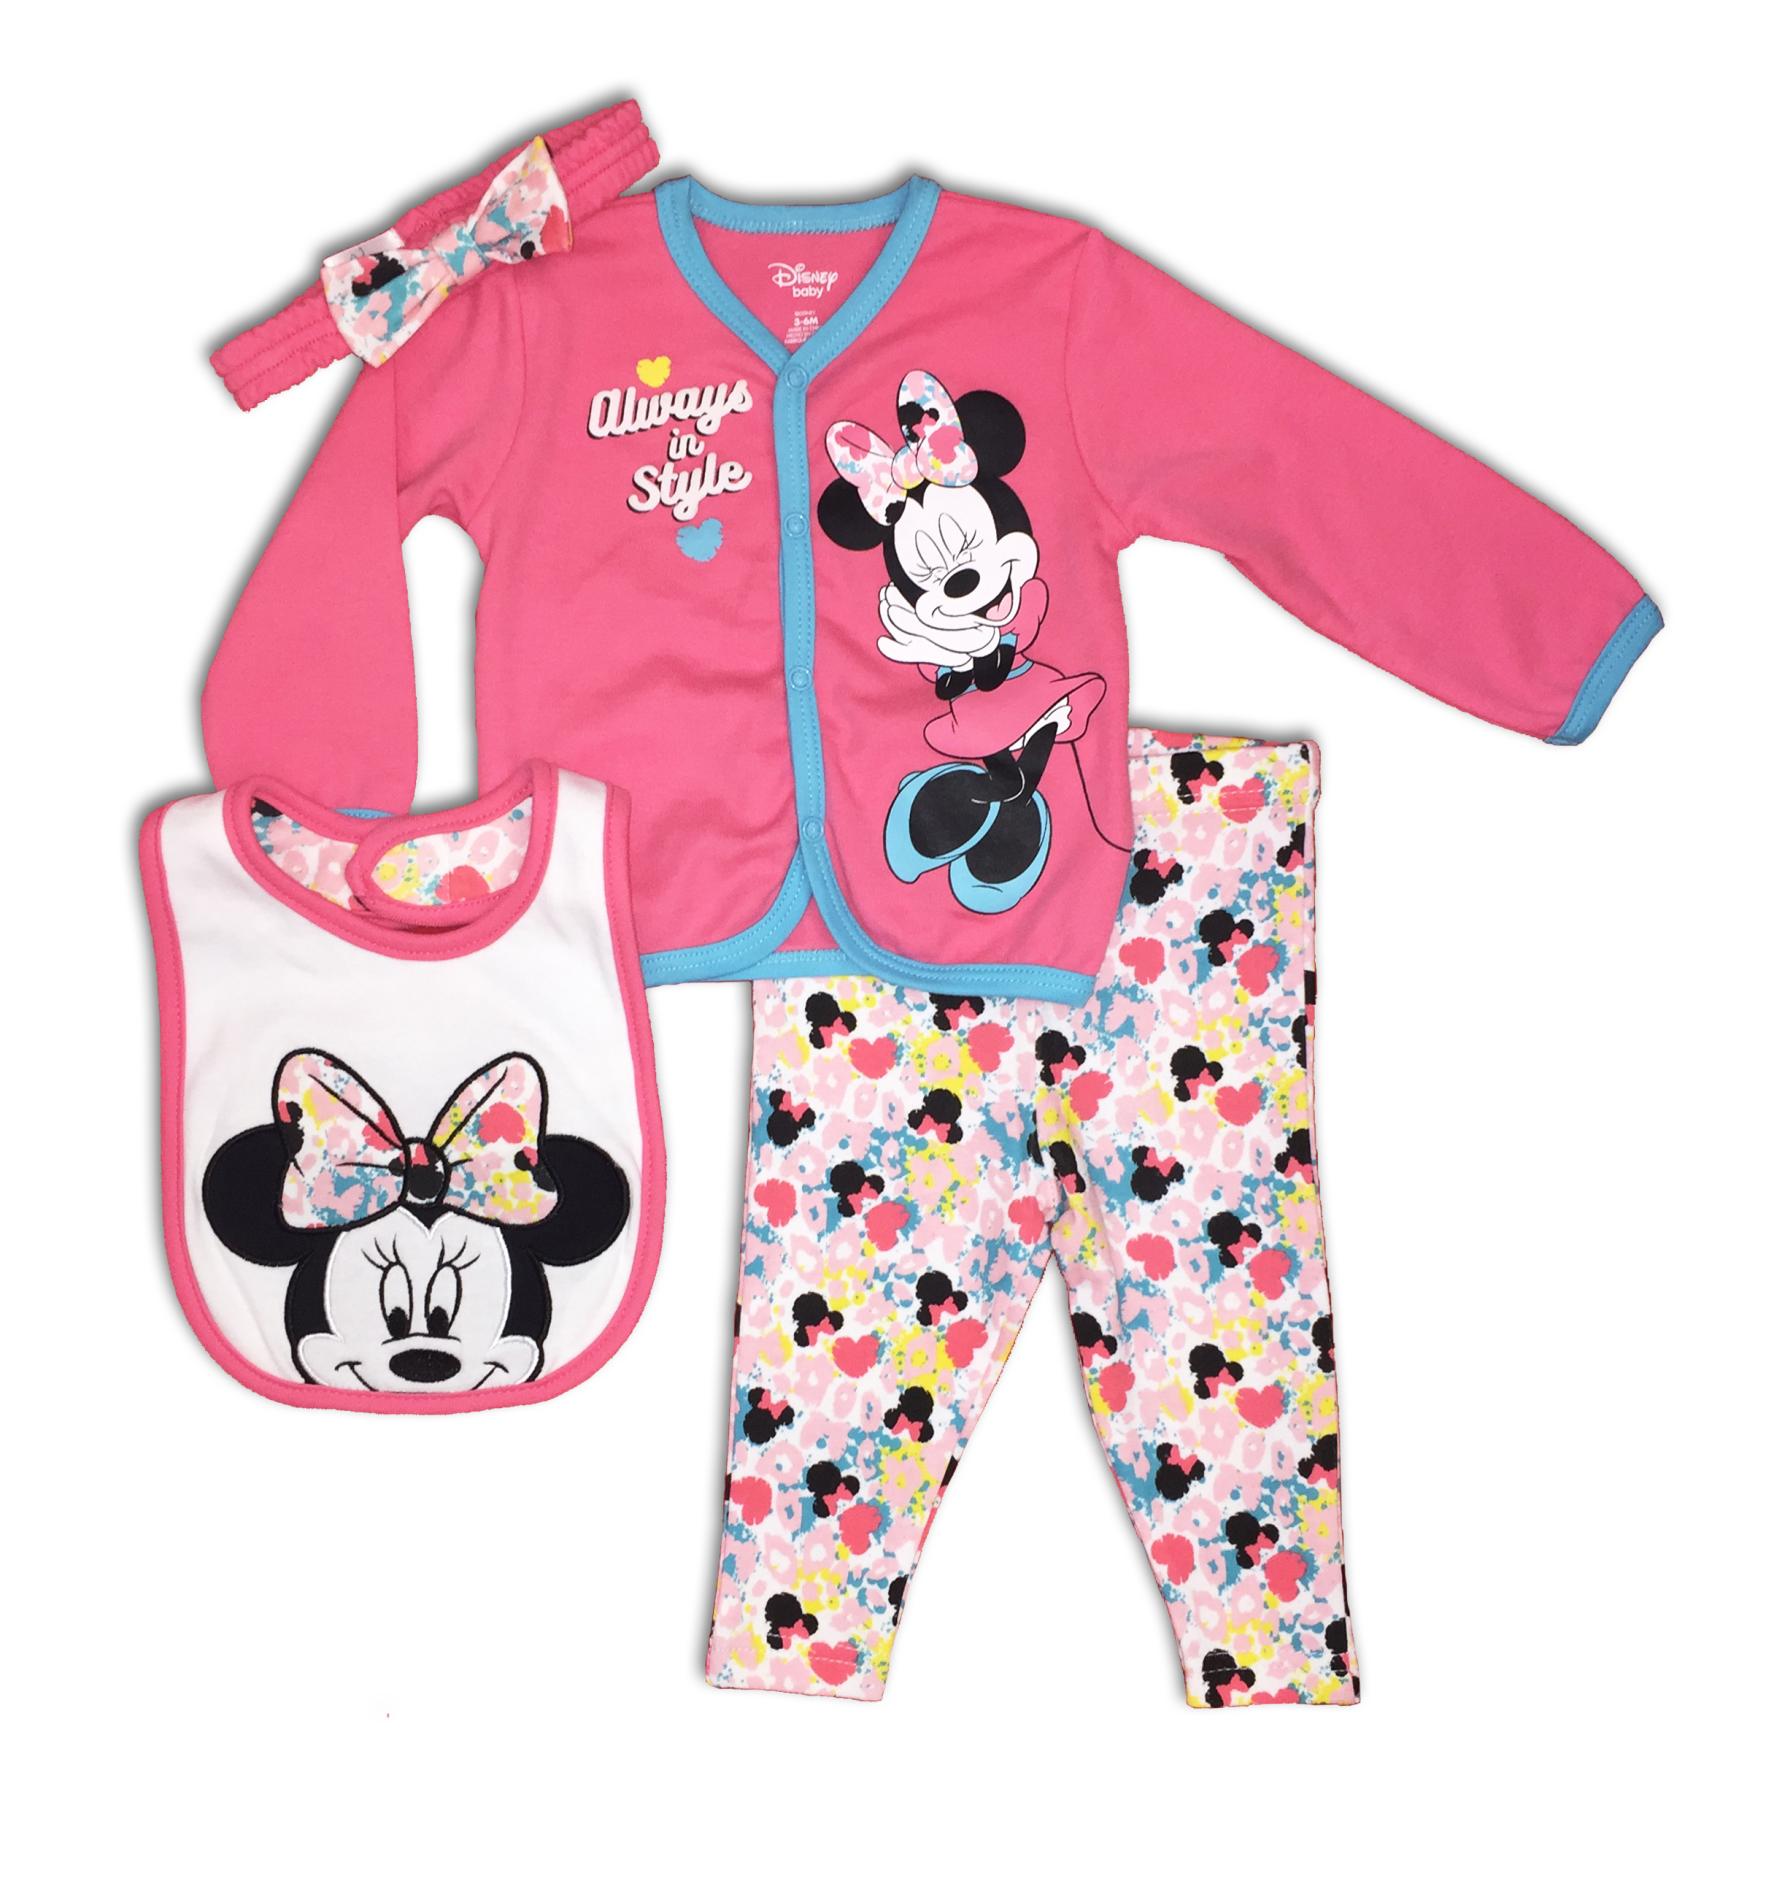 Disney Minnie Mouse Newborn Girls' Top, Leggings, Bib & Headband